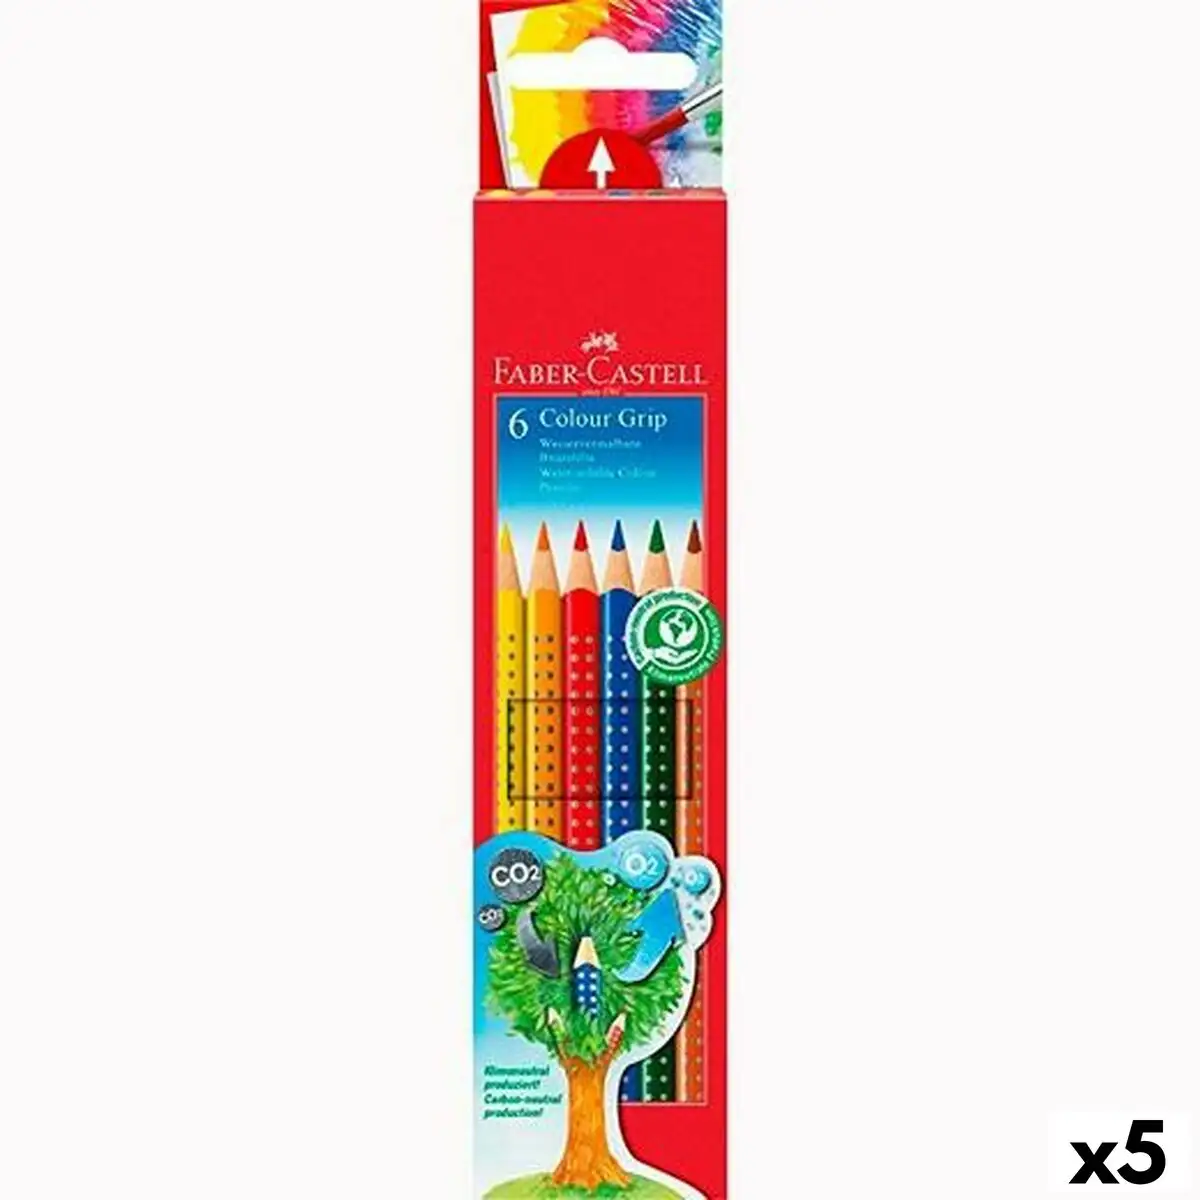 Crayons de couleurs pour aquarelle faber castell multicouleur 5 unites _4794. DIAYTAR SENEGAL - L'Art du Shopping Facilité. Naviguez sur notre plateforme en ligne pour découvrir une expérience d'achat fluide et agréable, avec une gamme de produits adaptés à tous.